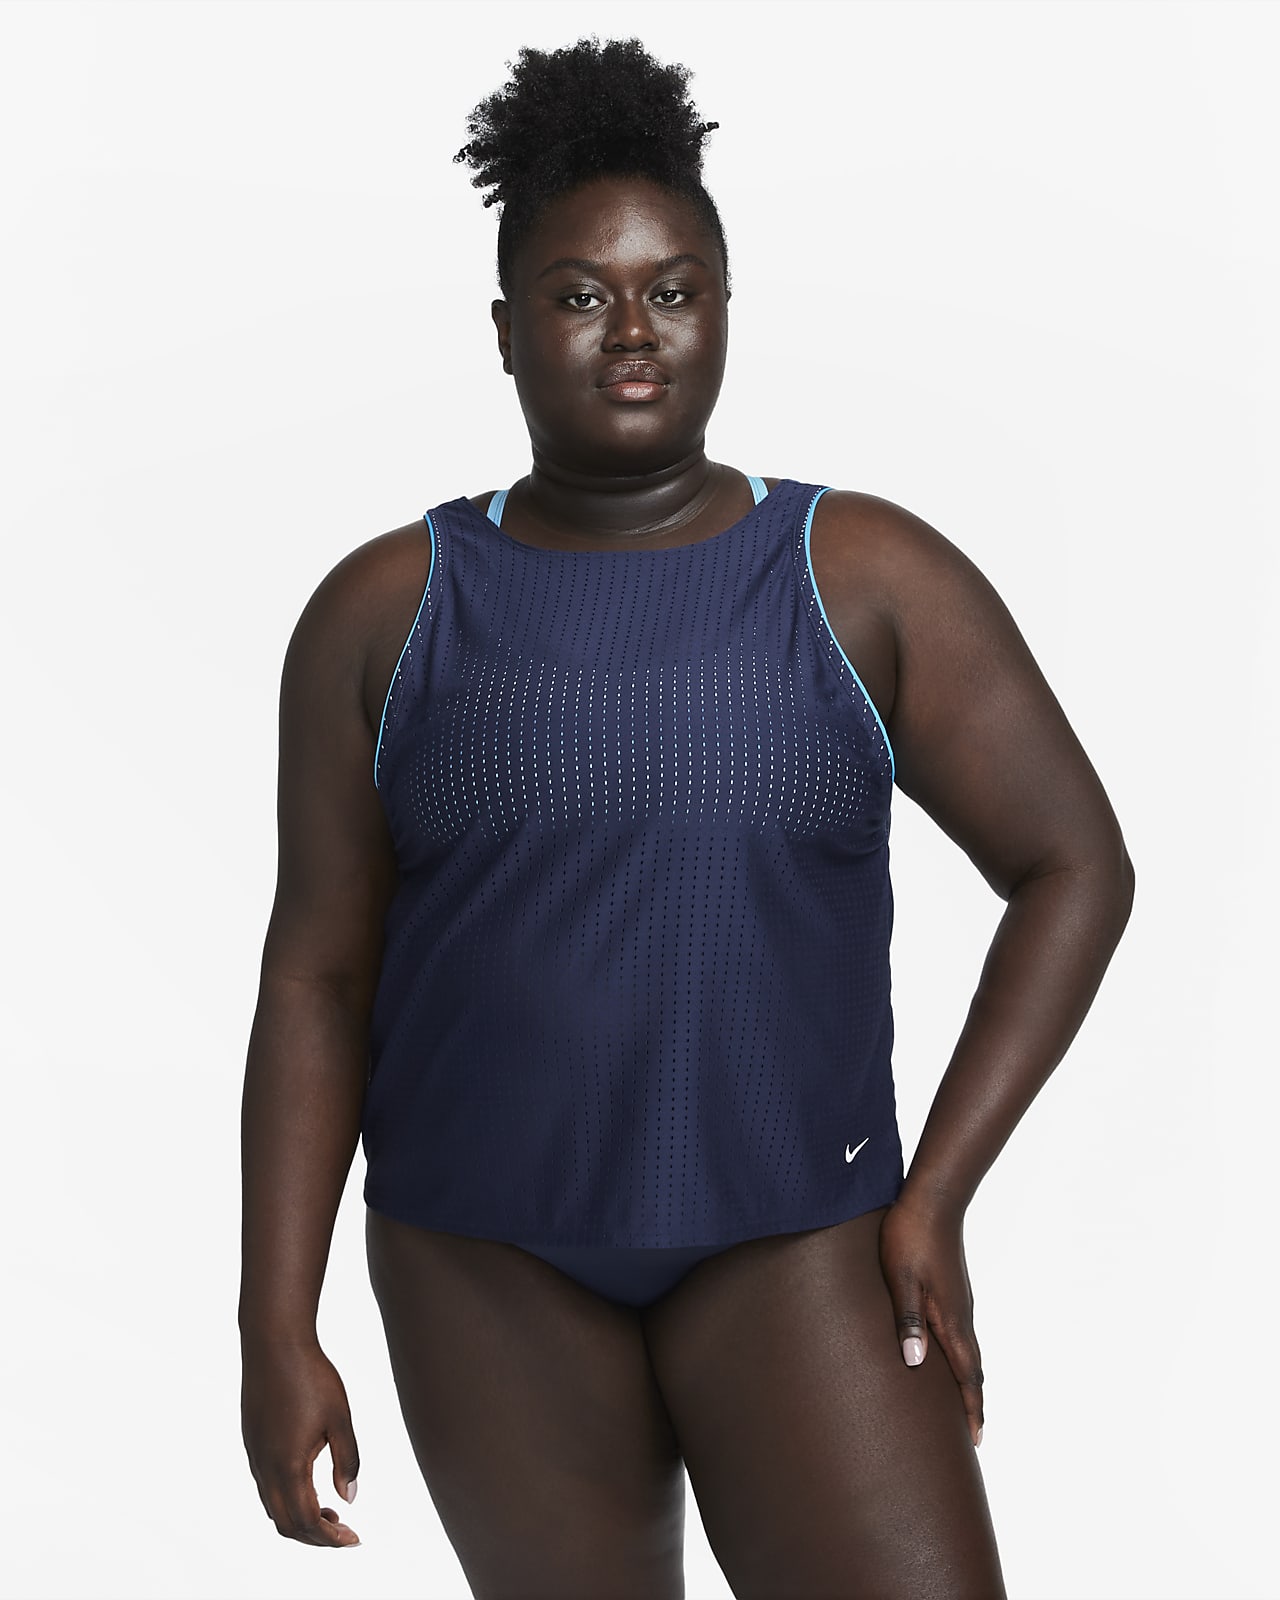 Nike Swim Women's Convertible Layered Tankini Top (Plus Size).